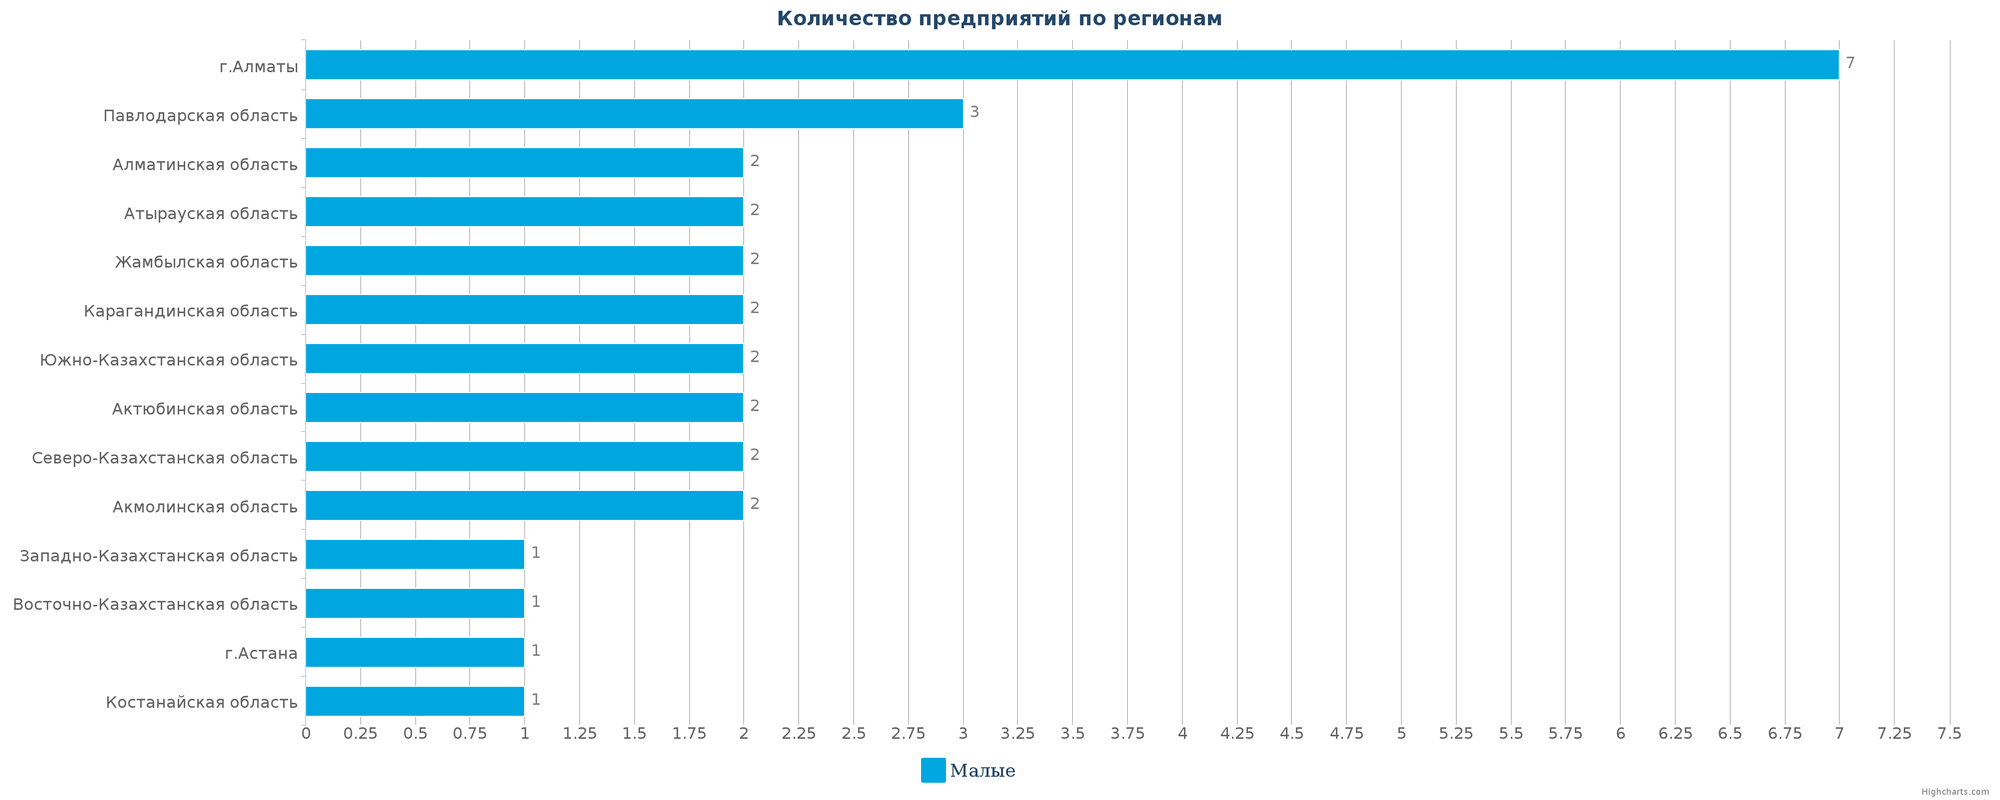 Количество новых производственных предприятий по областям Казахстана